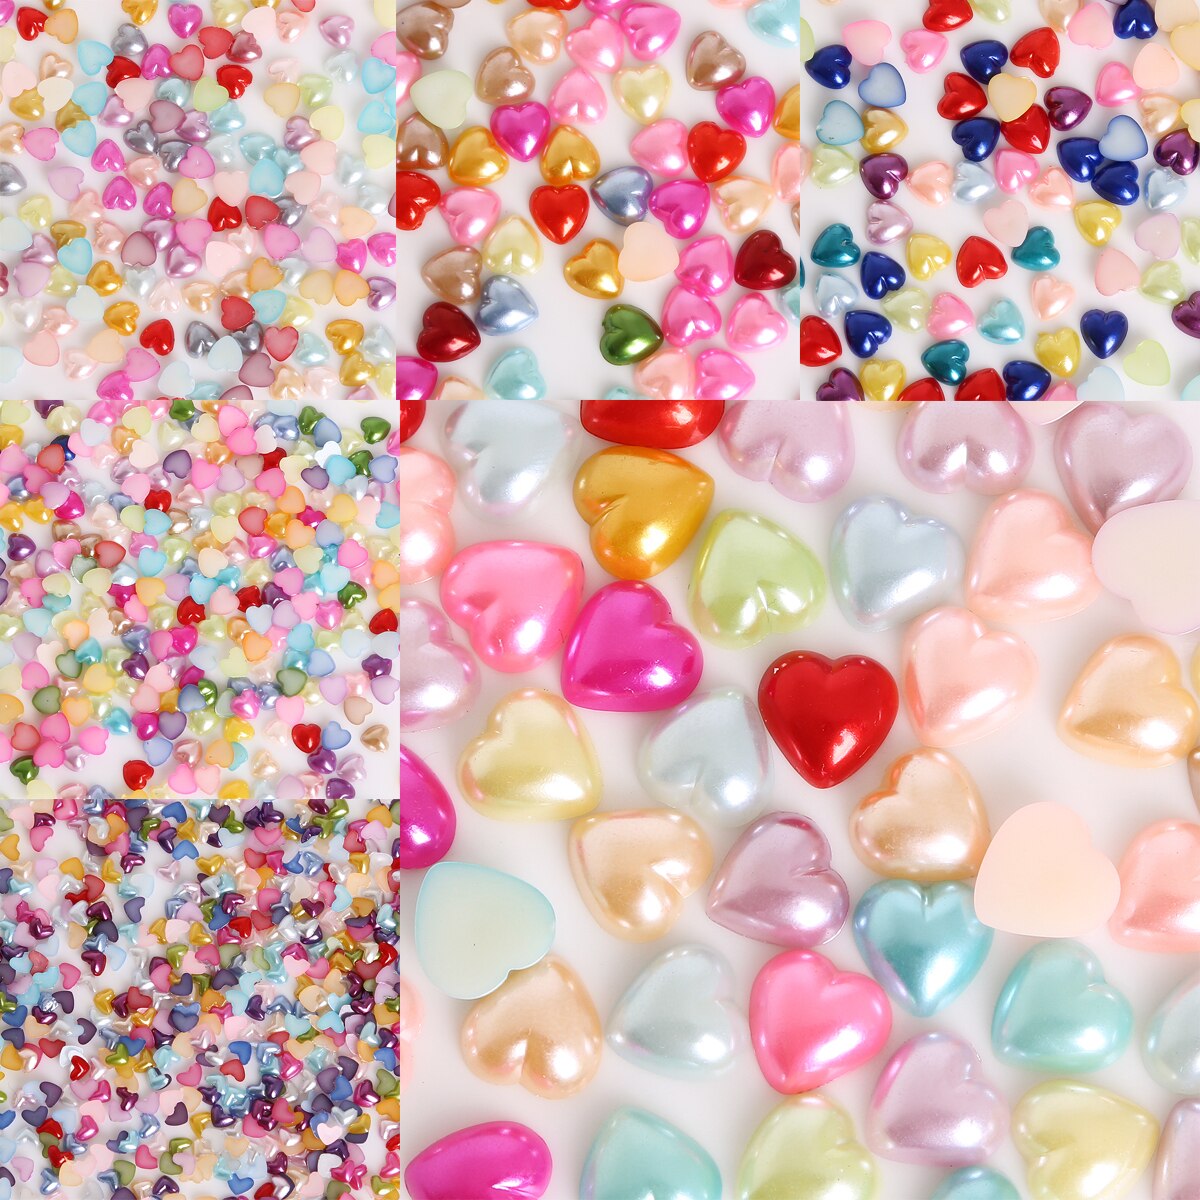 Tilfældig blandet farve 50-300 stk  (3-12mm)  flatback hjerteform plast abs efterligning perleperler til diy håndværk scrapbog dekoration